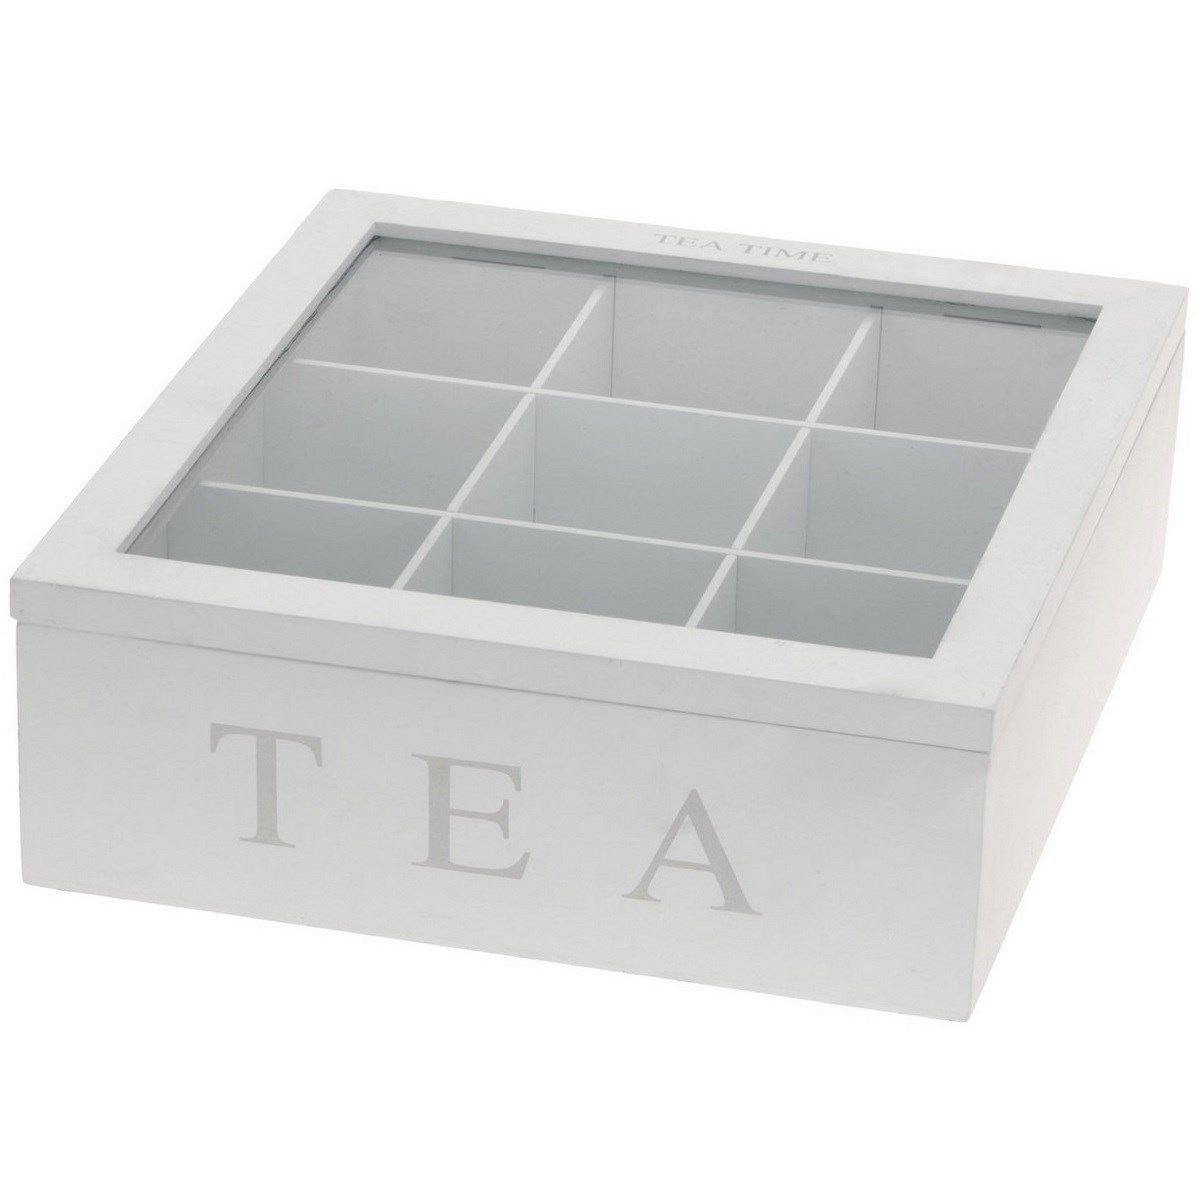 Box na čaj Tea, bílá - 4home.cz